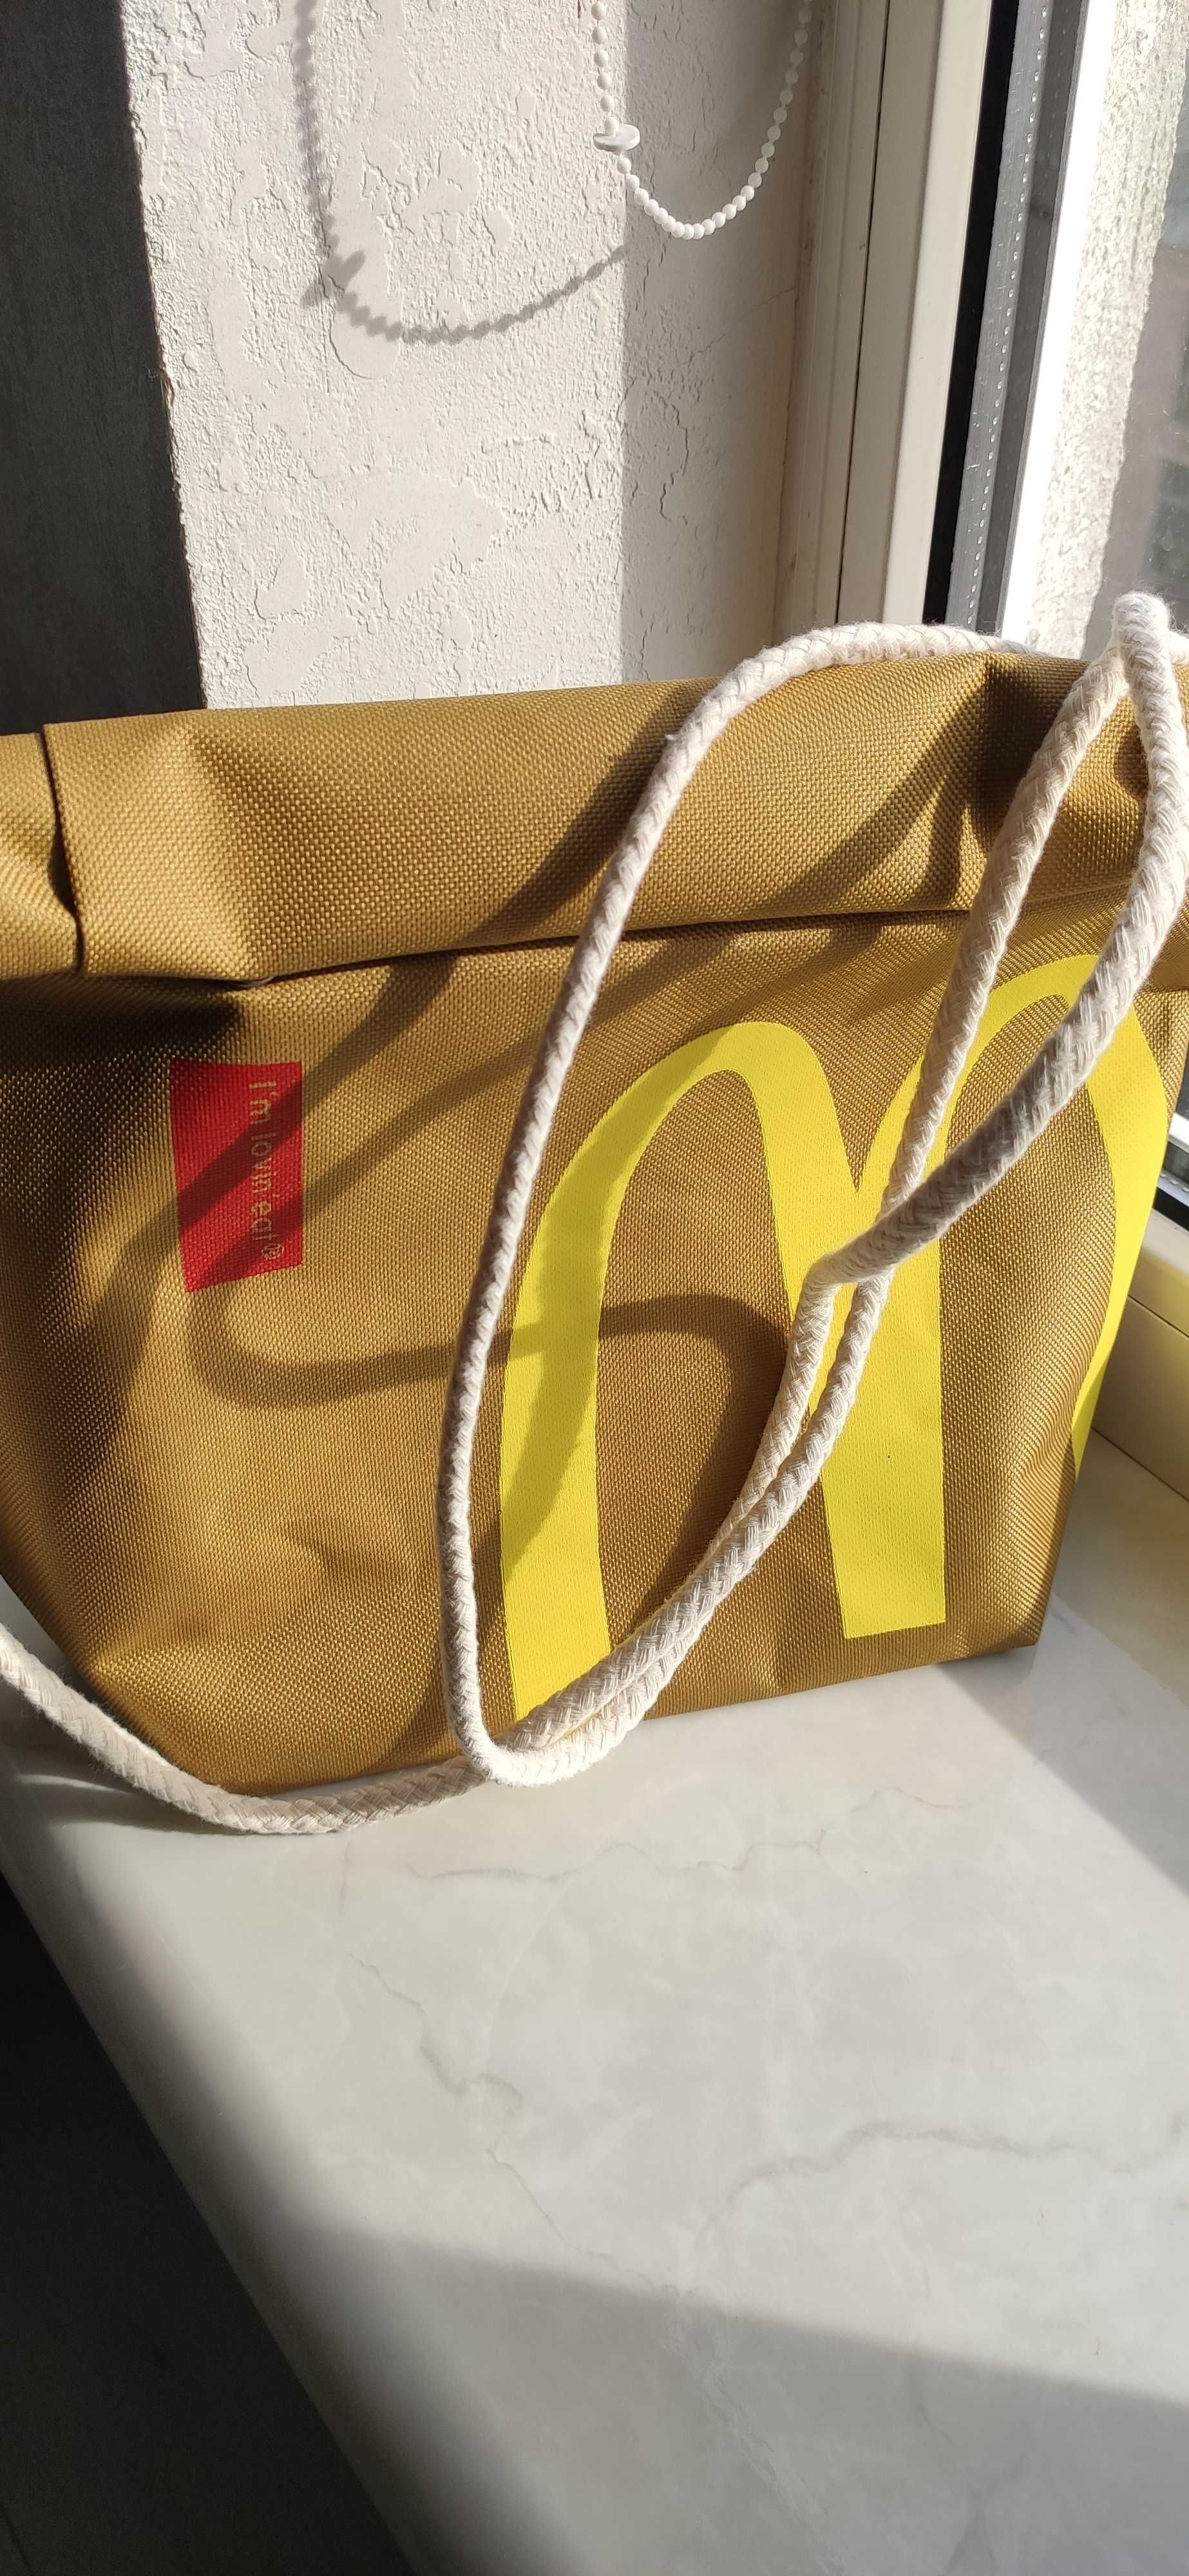 Нова сумка mcdonald's для упаковки картоплі фрі )